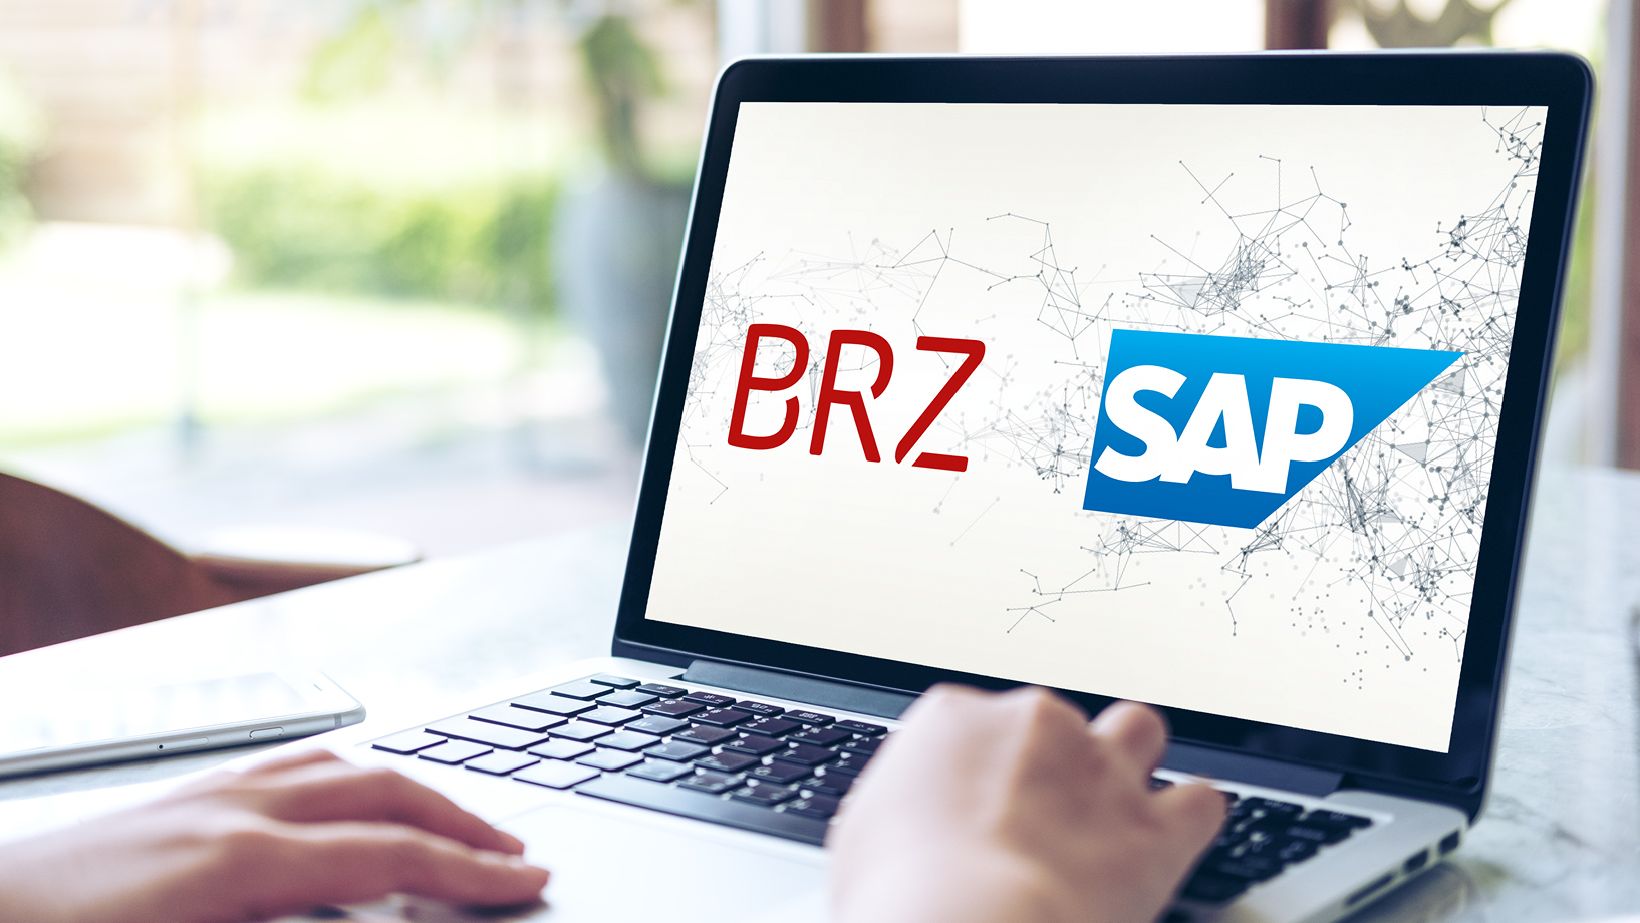 Ein Laptop zeigt das Logo des BRZ und von SAP.